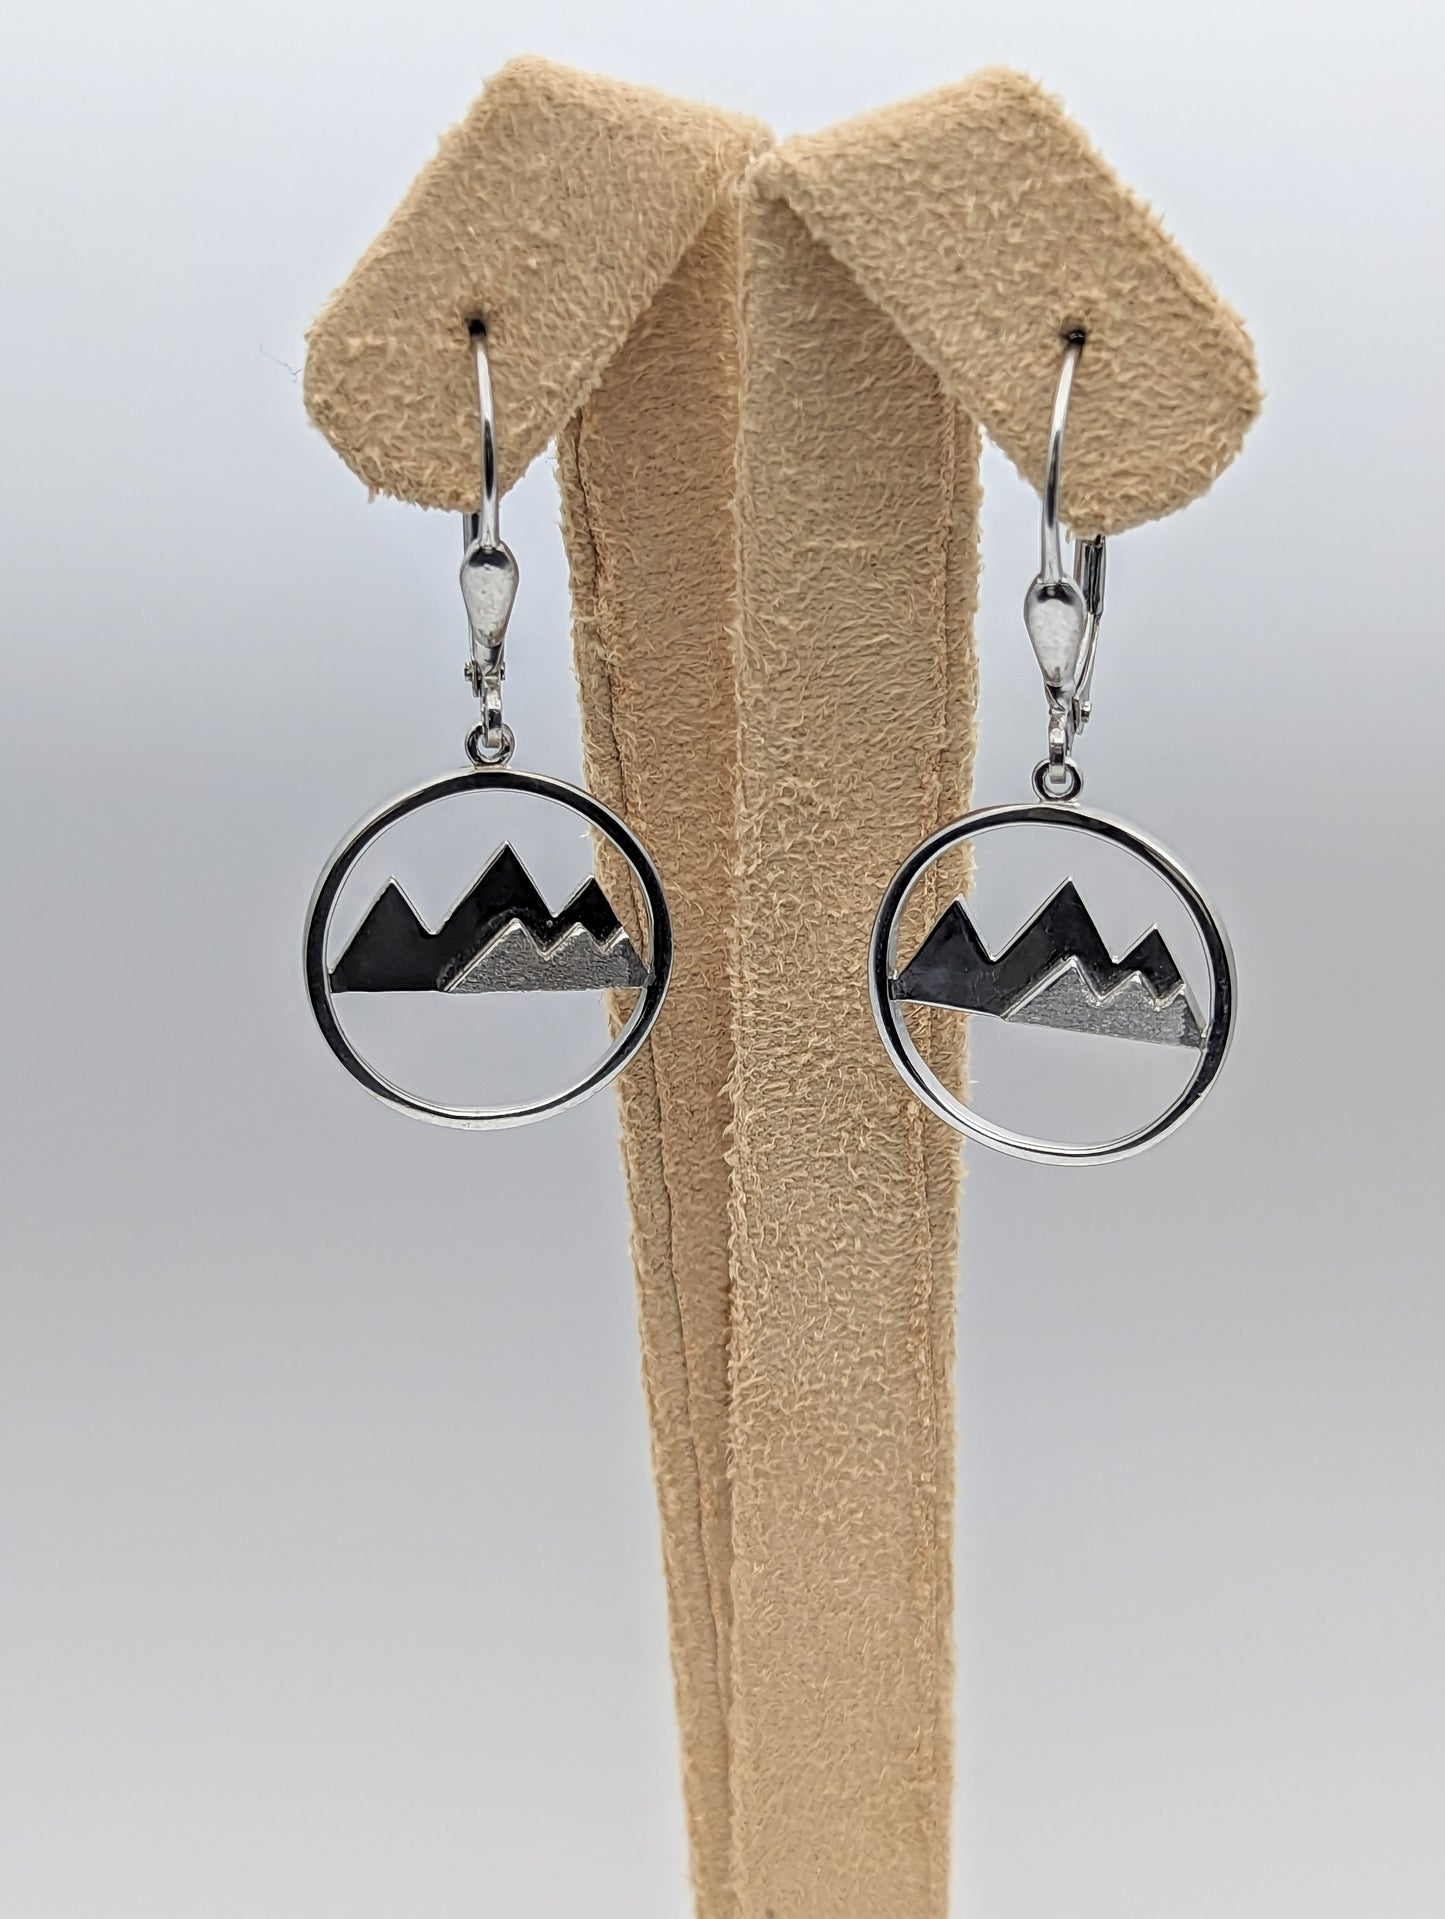 Six peak mountain earrings